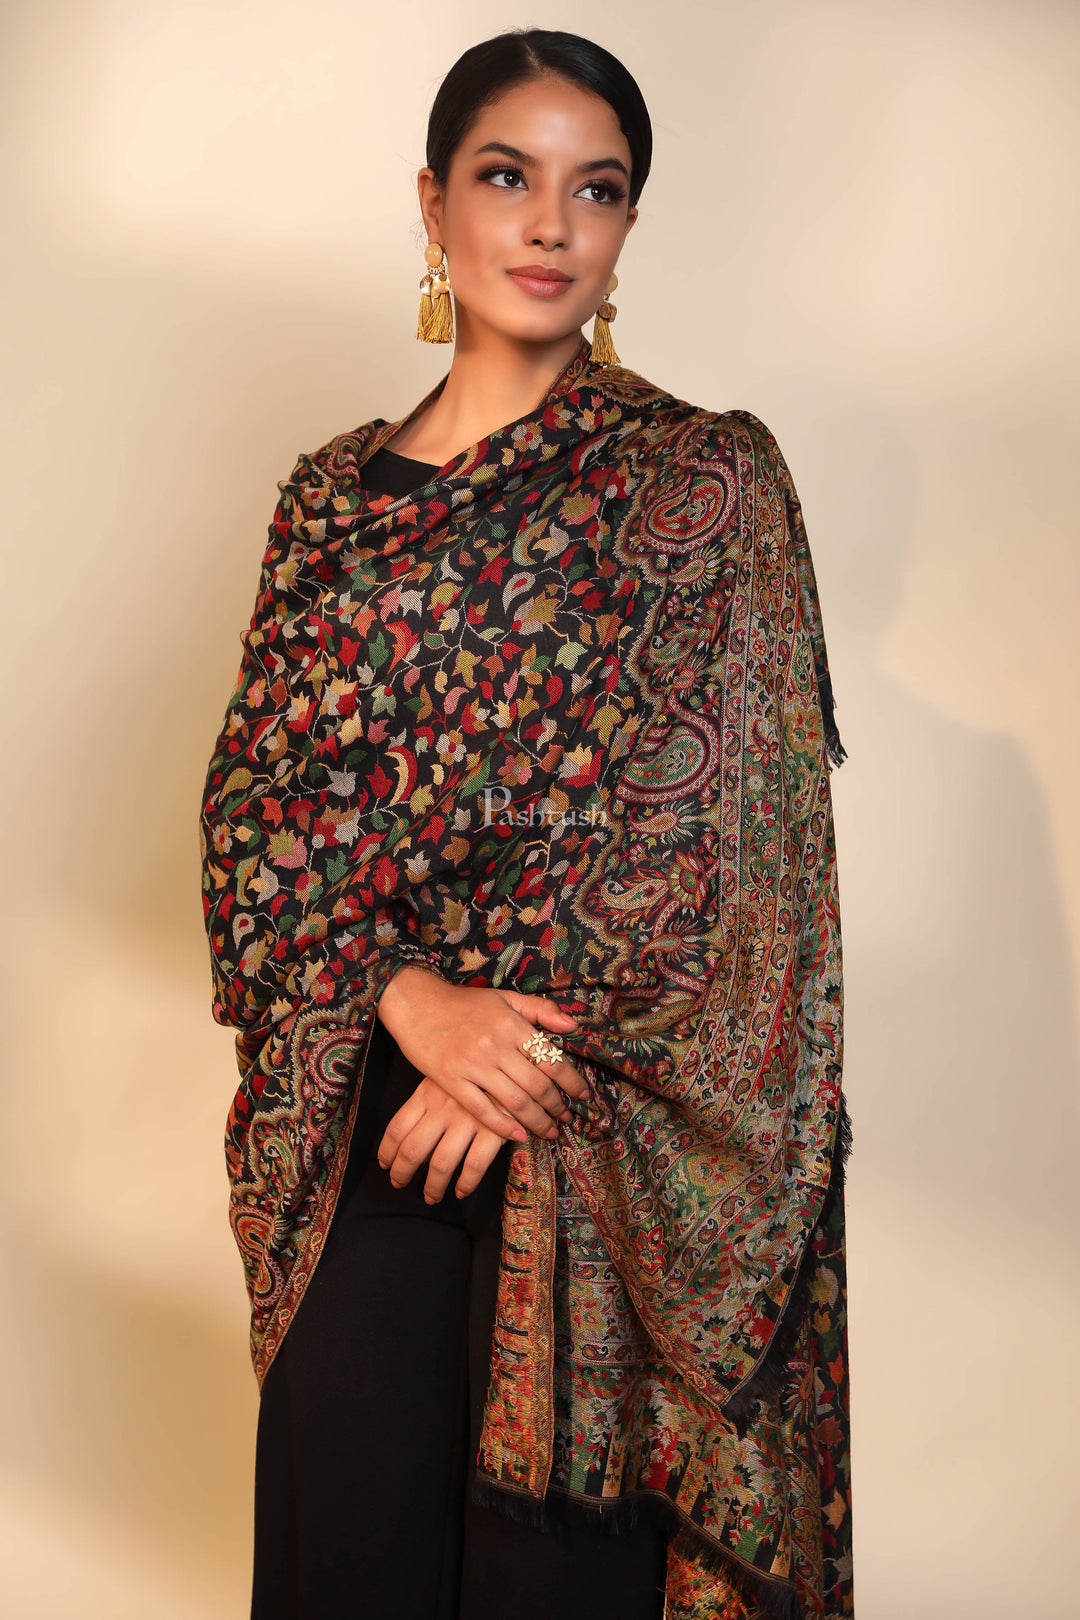 Pashtush India Womens Shawls Pashtush women faux pashmina shawl, ethnic weave design, black